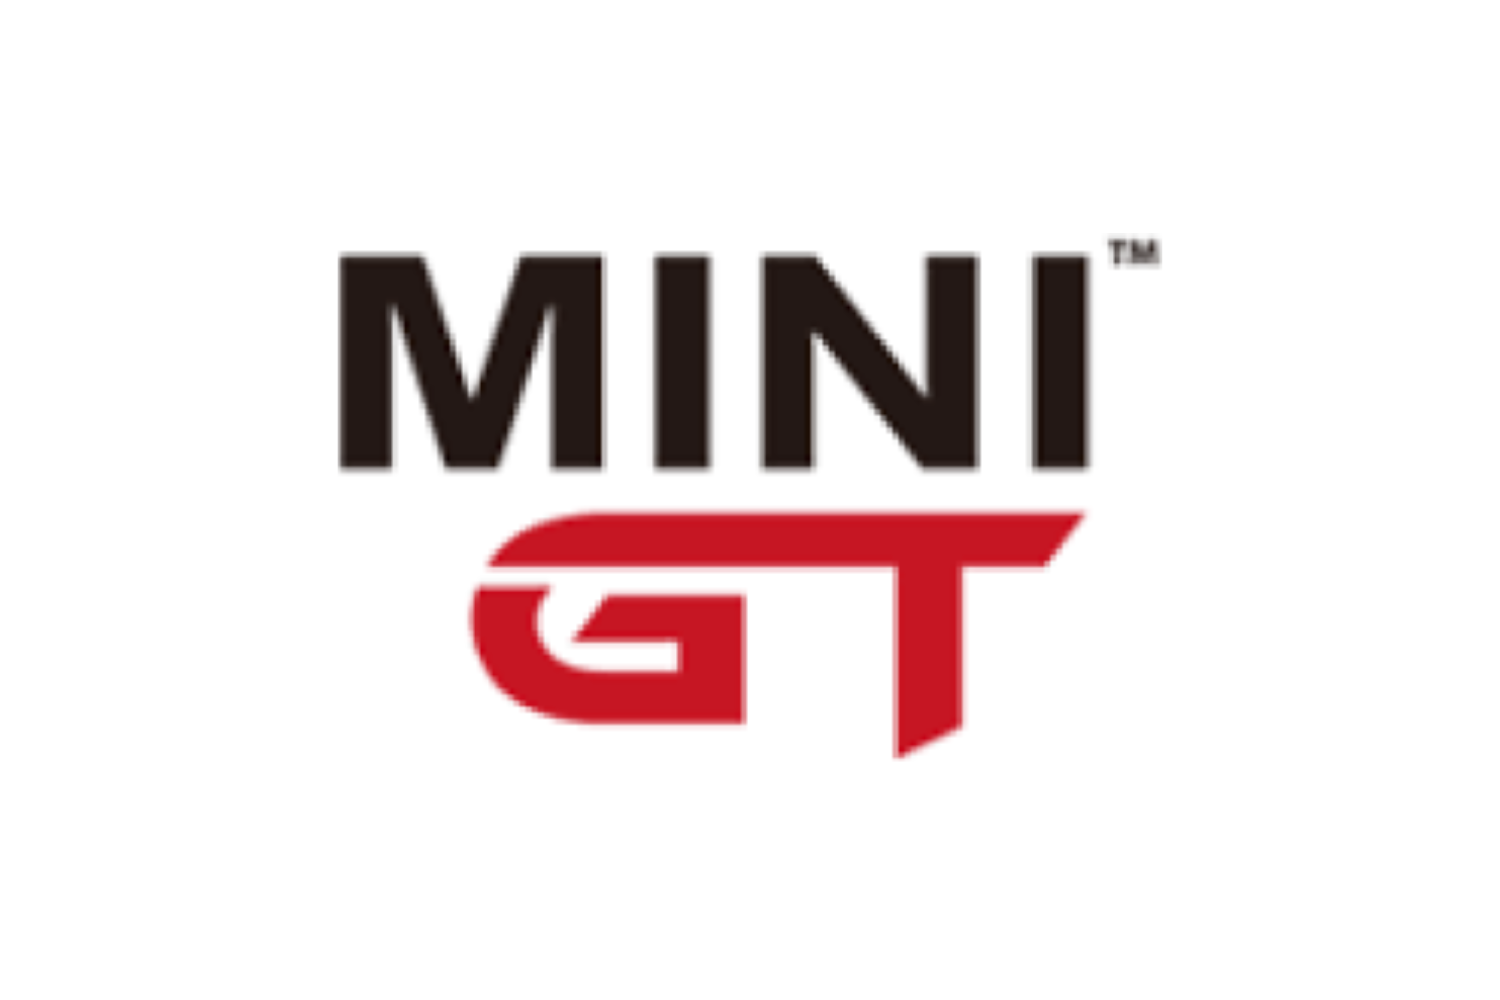 Mini GT Newest Special Pre-Order  2023 IMSA GTP Series [ETA Jan 2024]